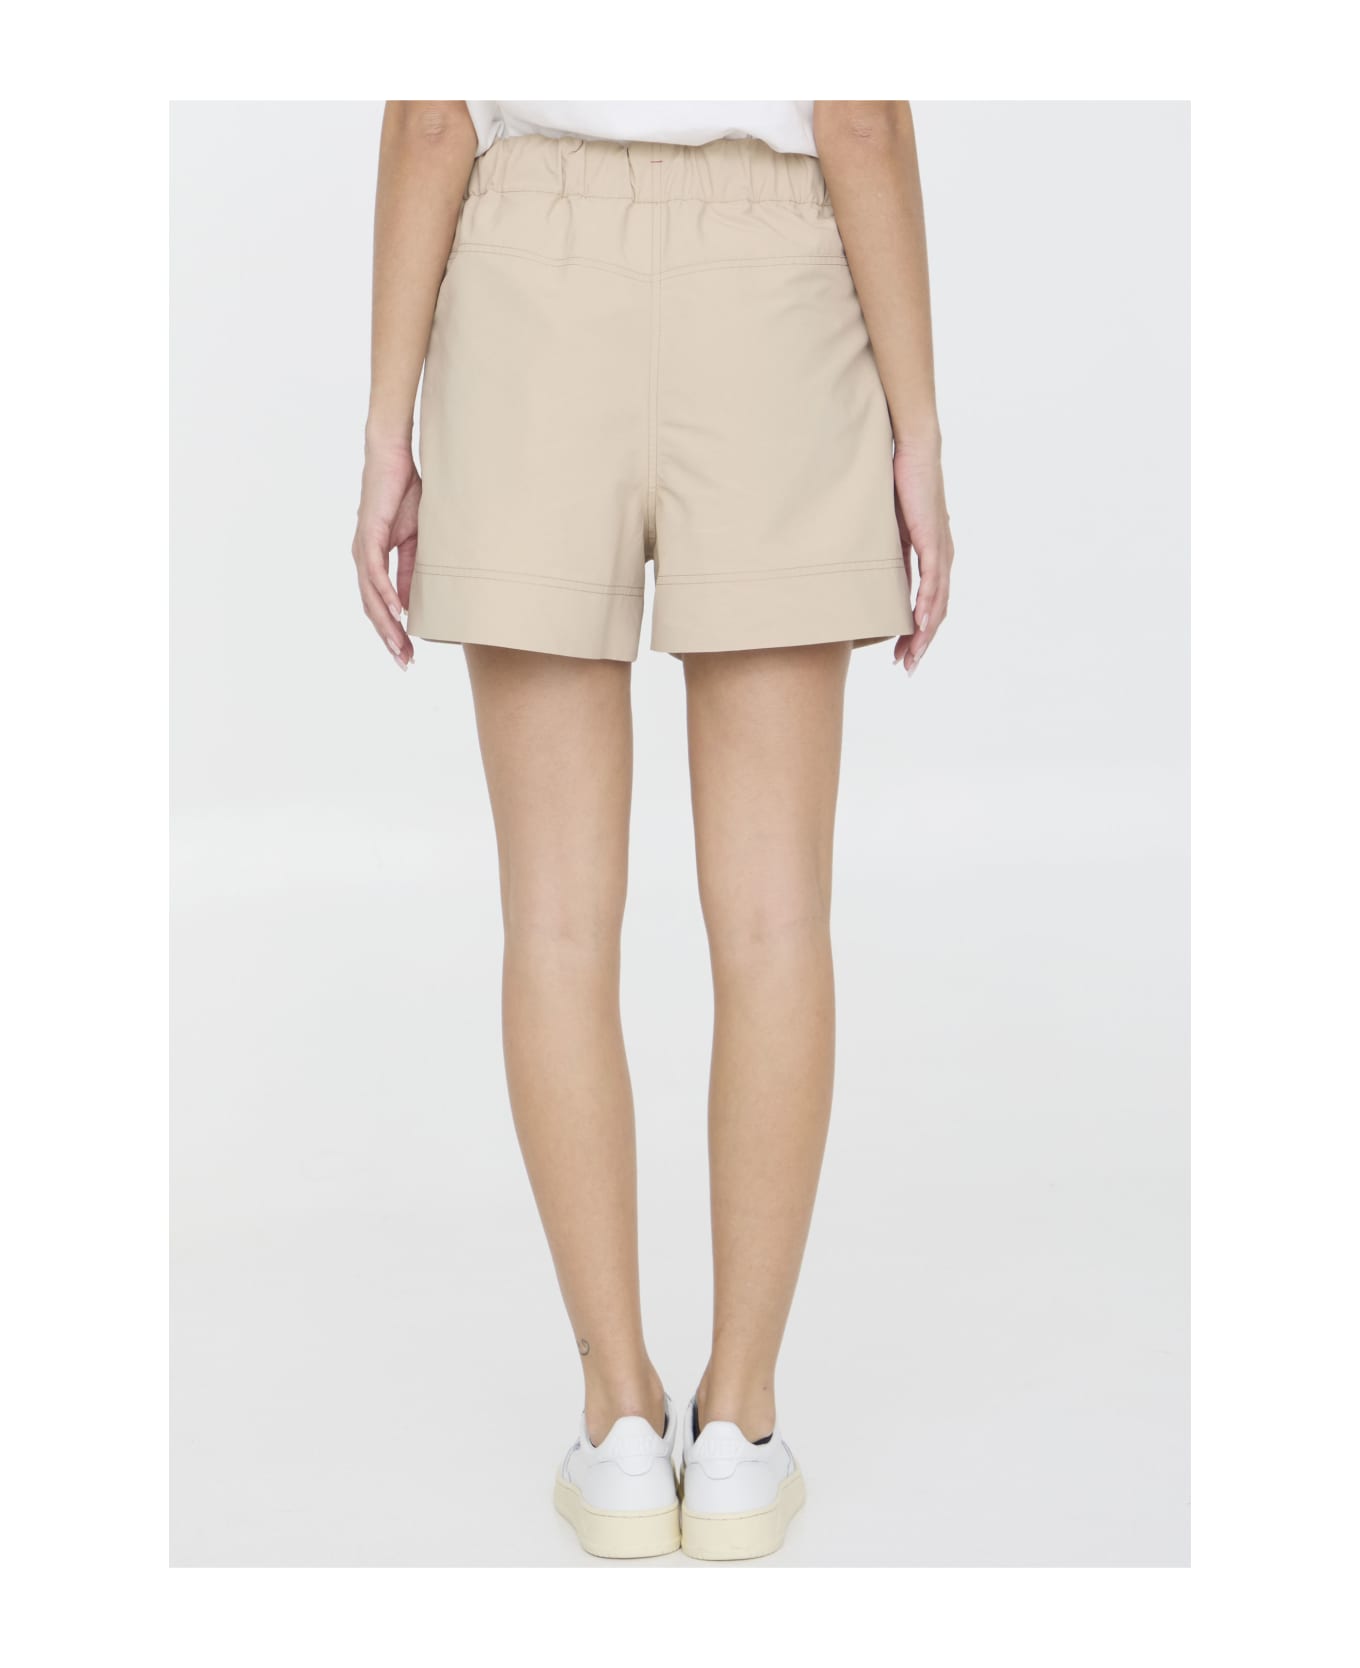 Moncler Grenoble Nylon Shorts - P